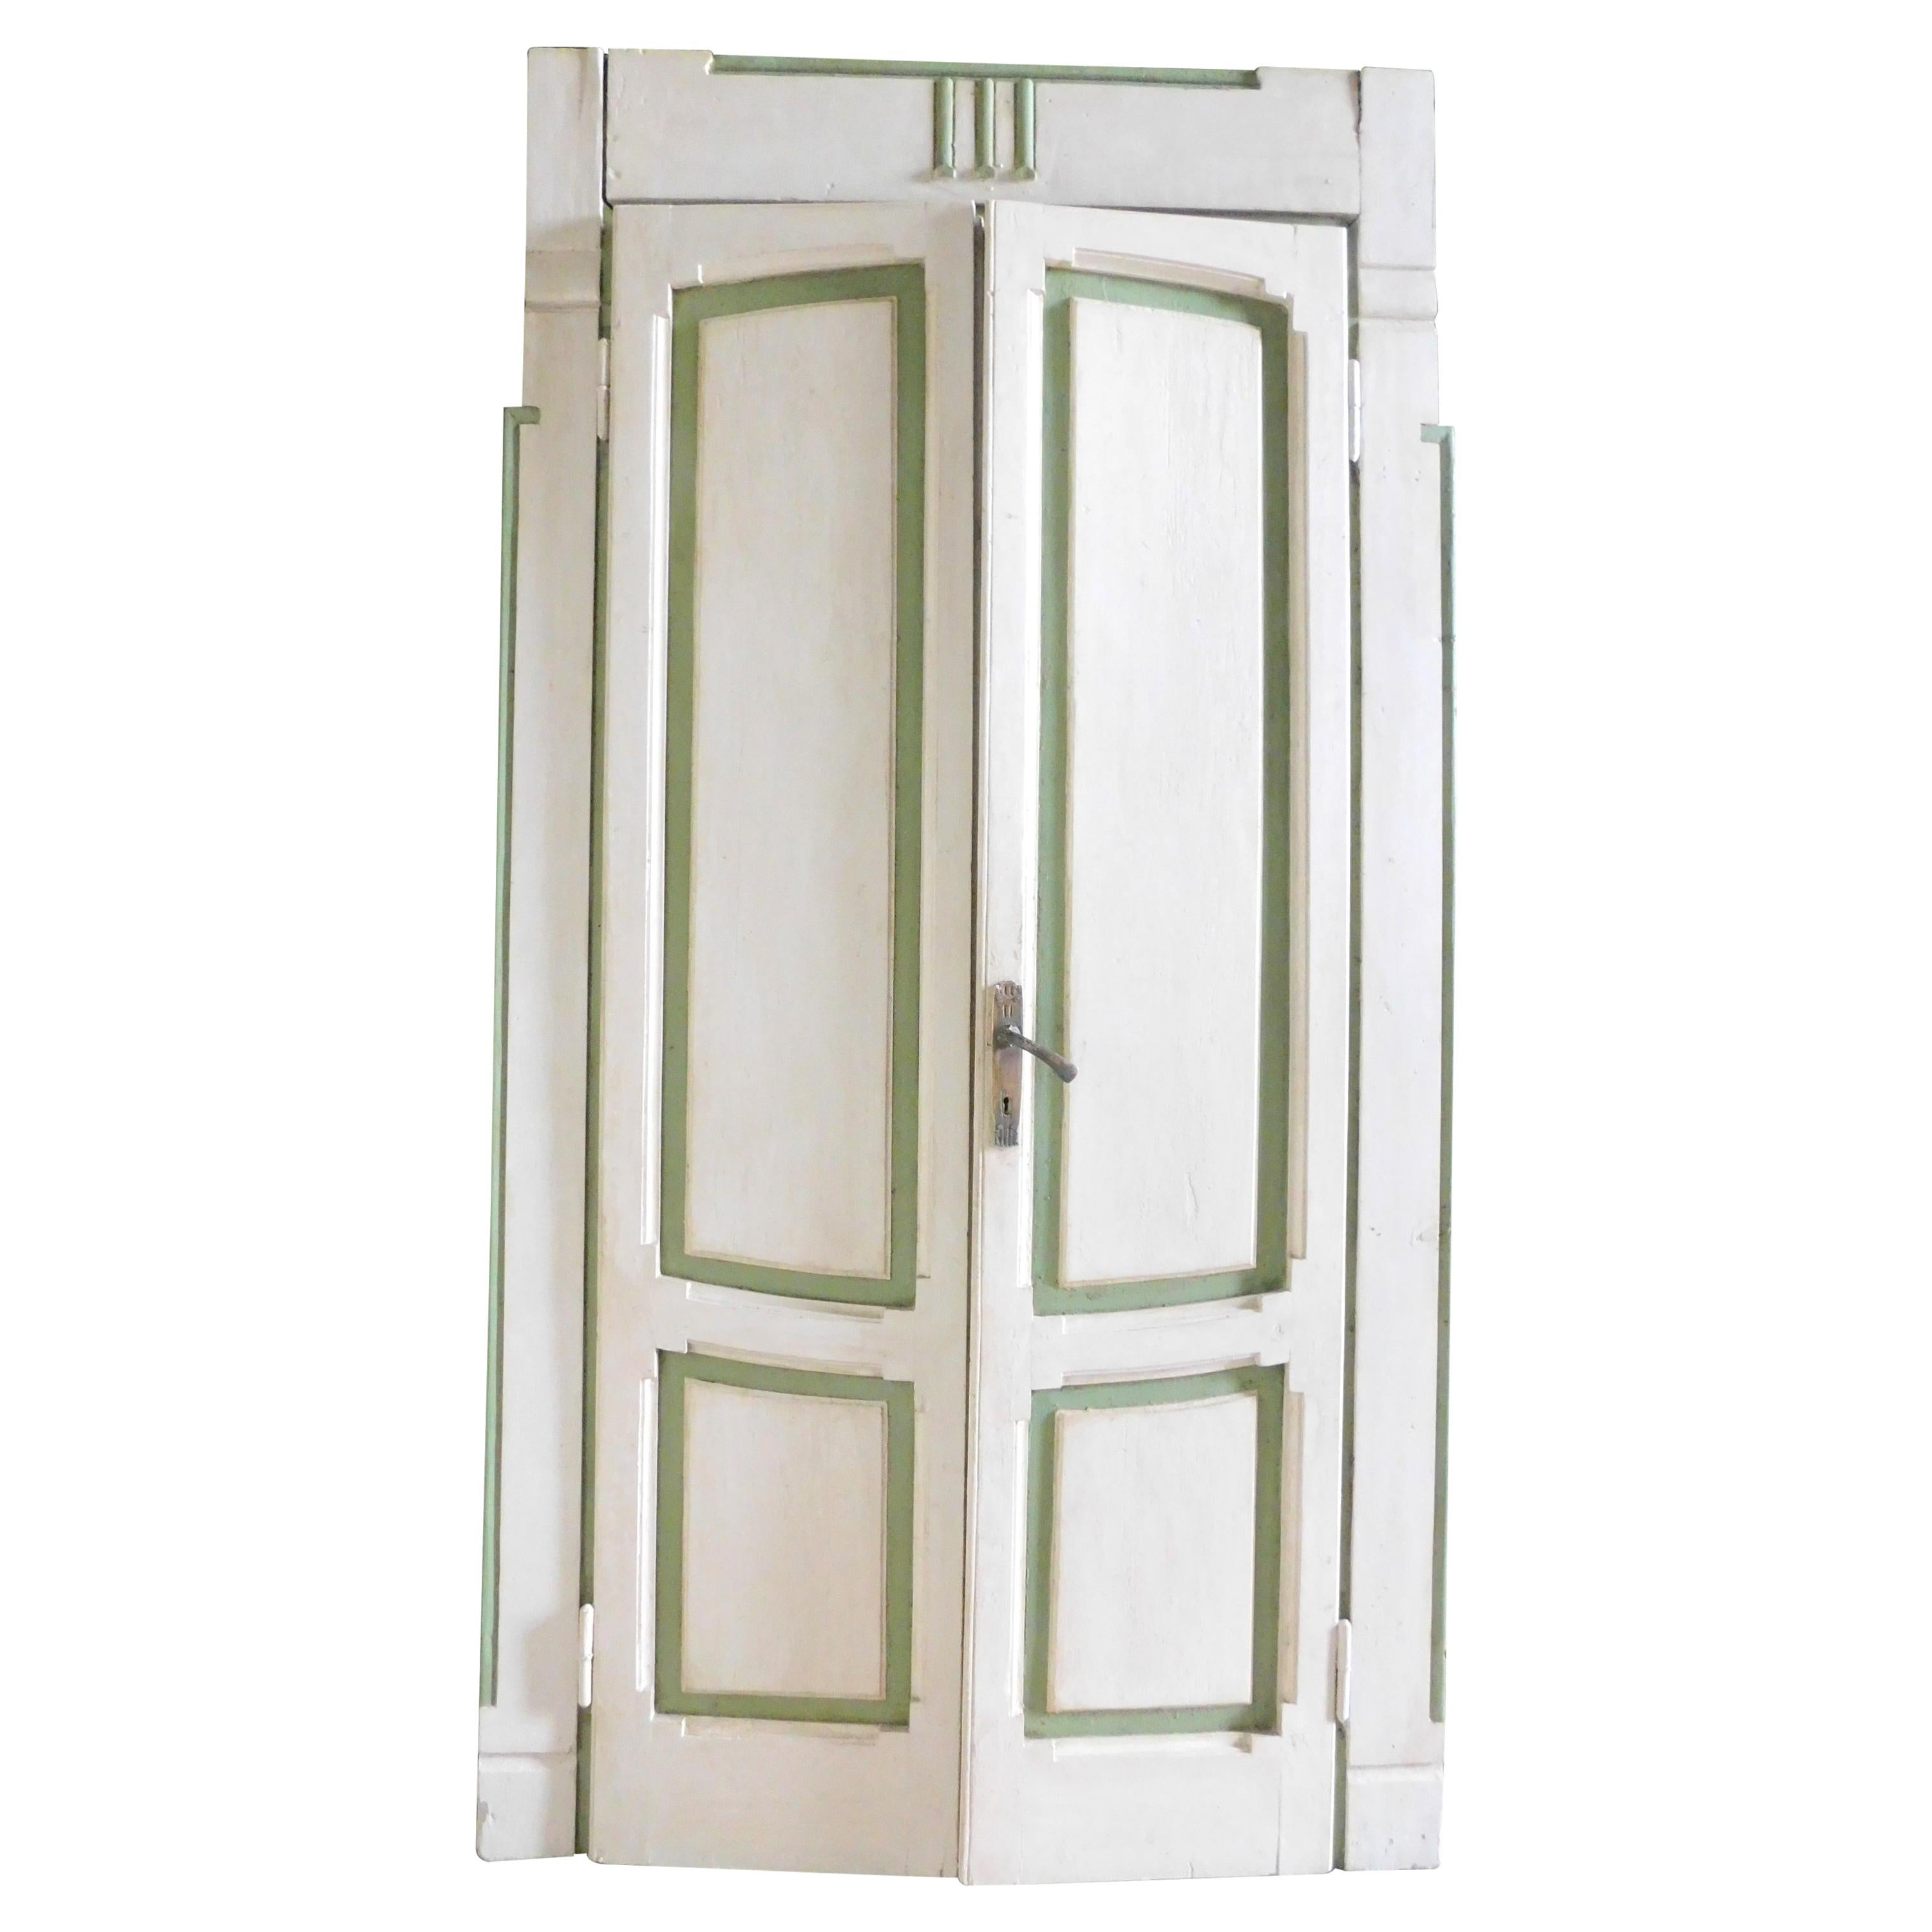 Set von 4 lackierten Türen im Deko-Stil, Weiß / Grün, unterschiedliche Größe, Mailand 1920